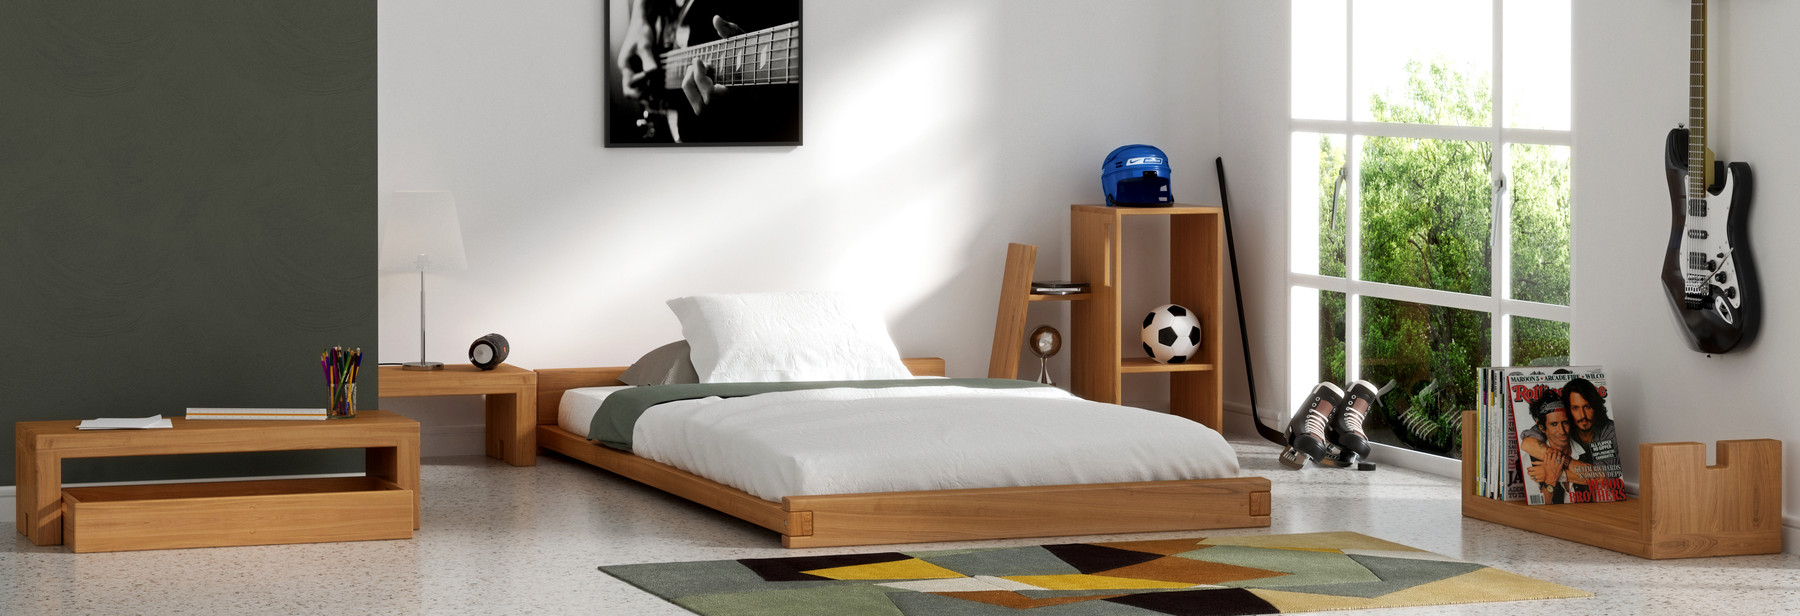 Minimaliste chambre adolescent avec des meubles en bois massif